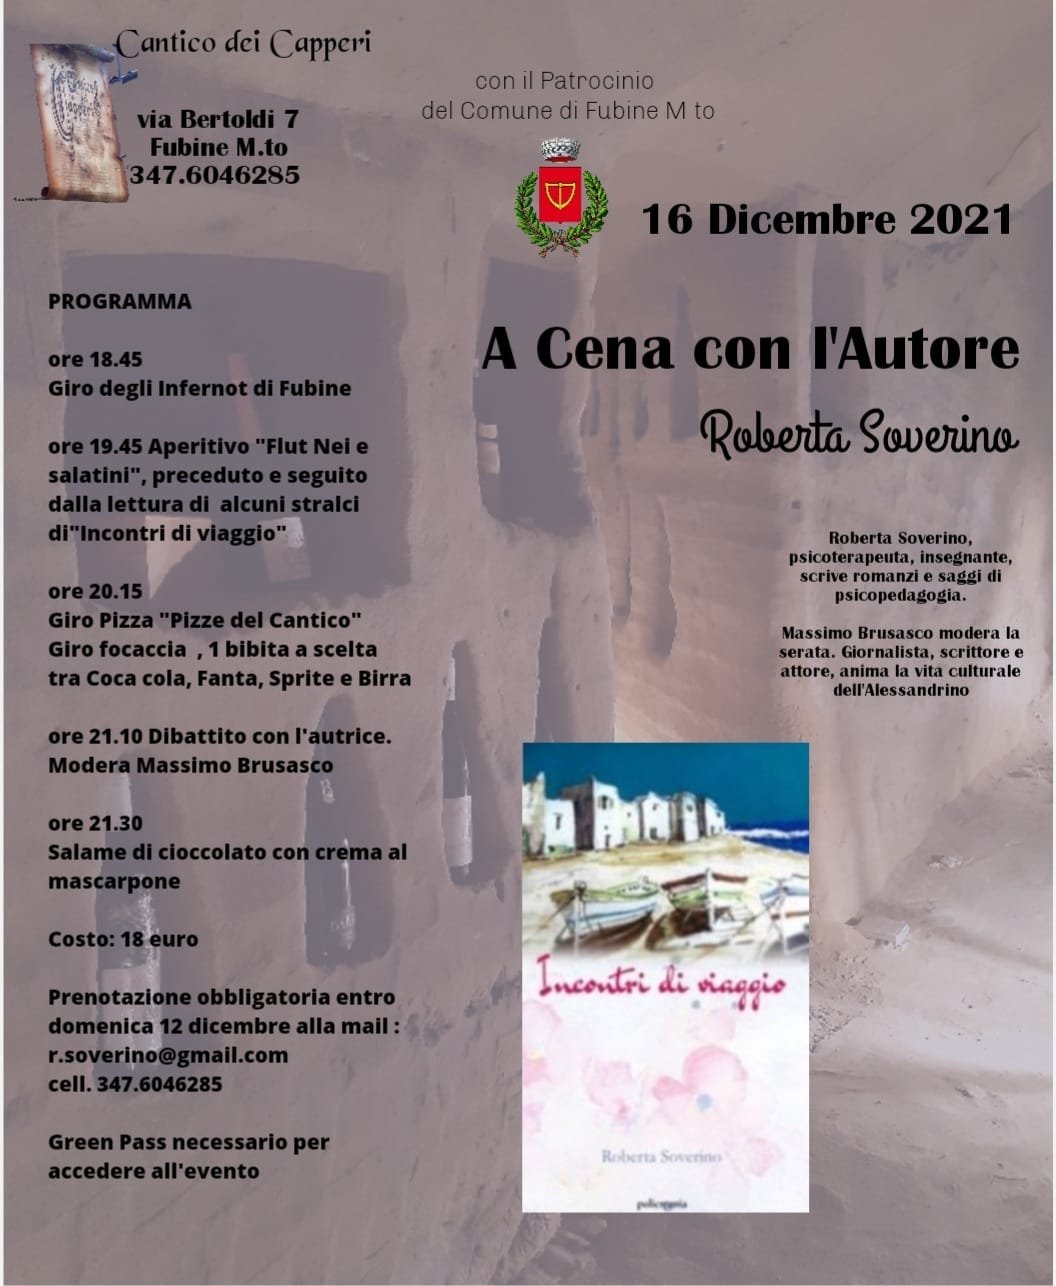 Il 16 dicembre a Fubine “A cena con l’autore” Roberta Soverino [SOLD OUT]